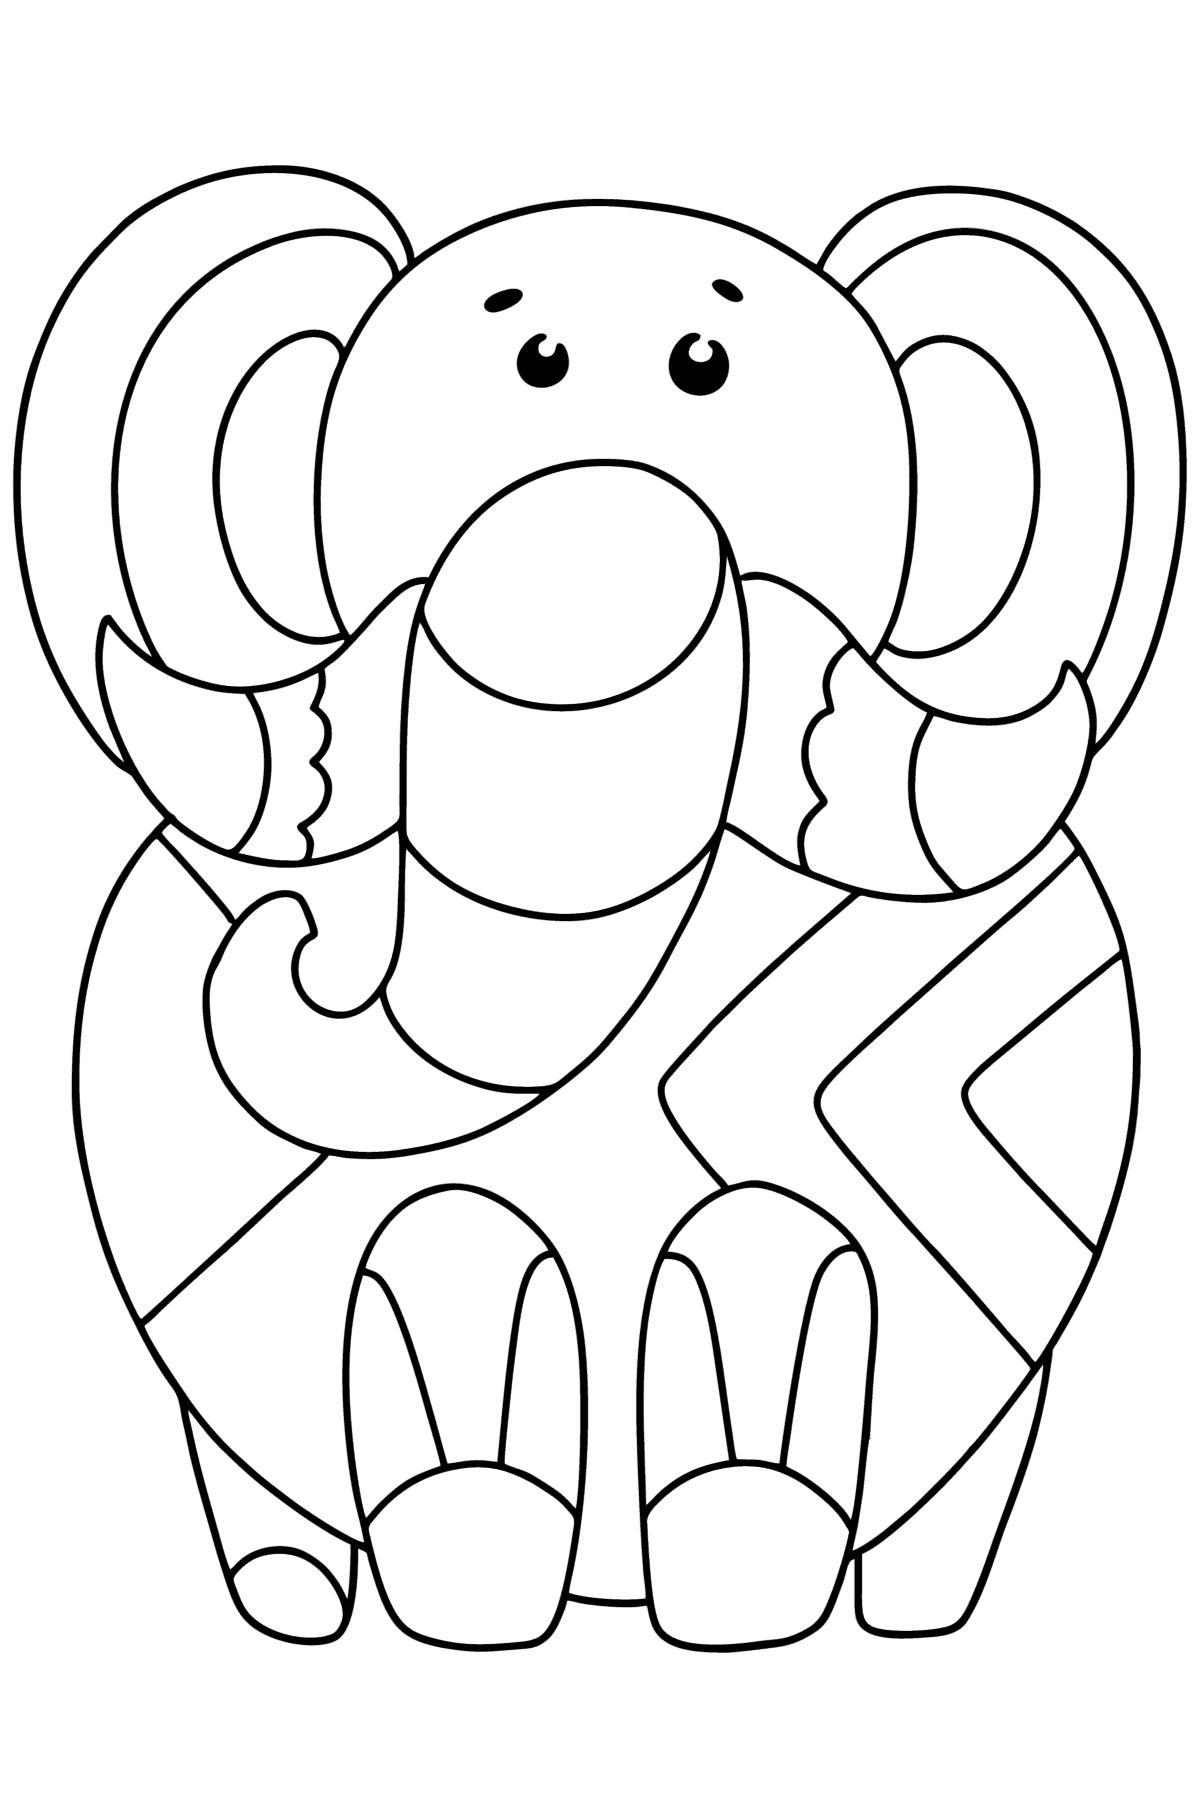 Desenho para colorir Simple Animal Mandala - Elefante - Imagens para Colorir para Crianças